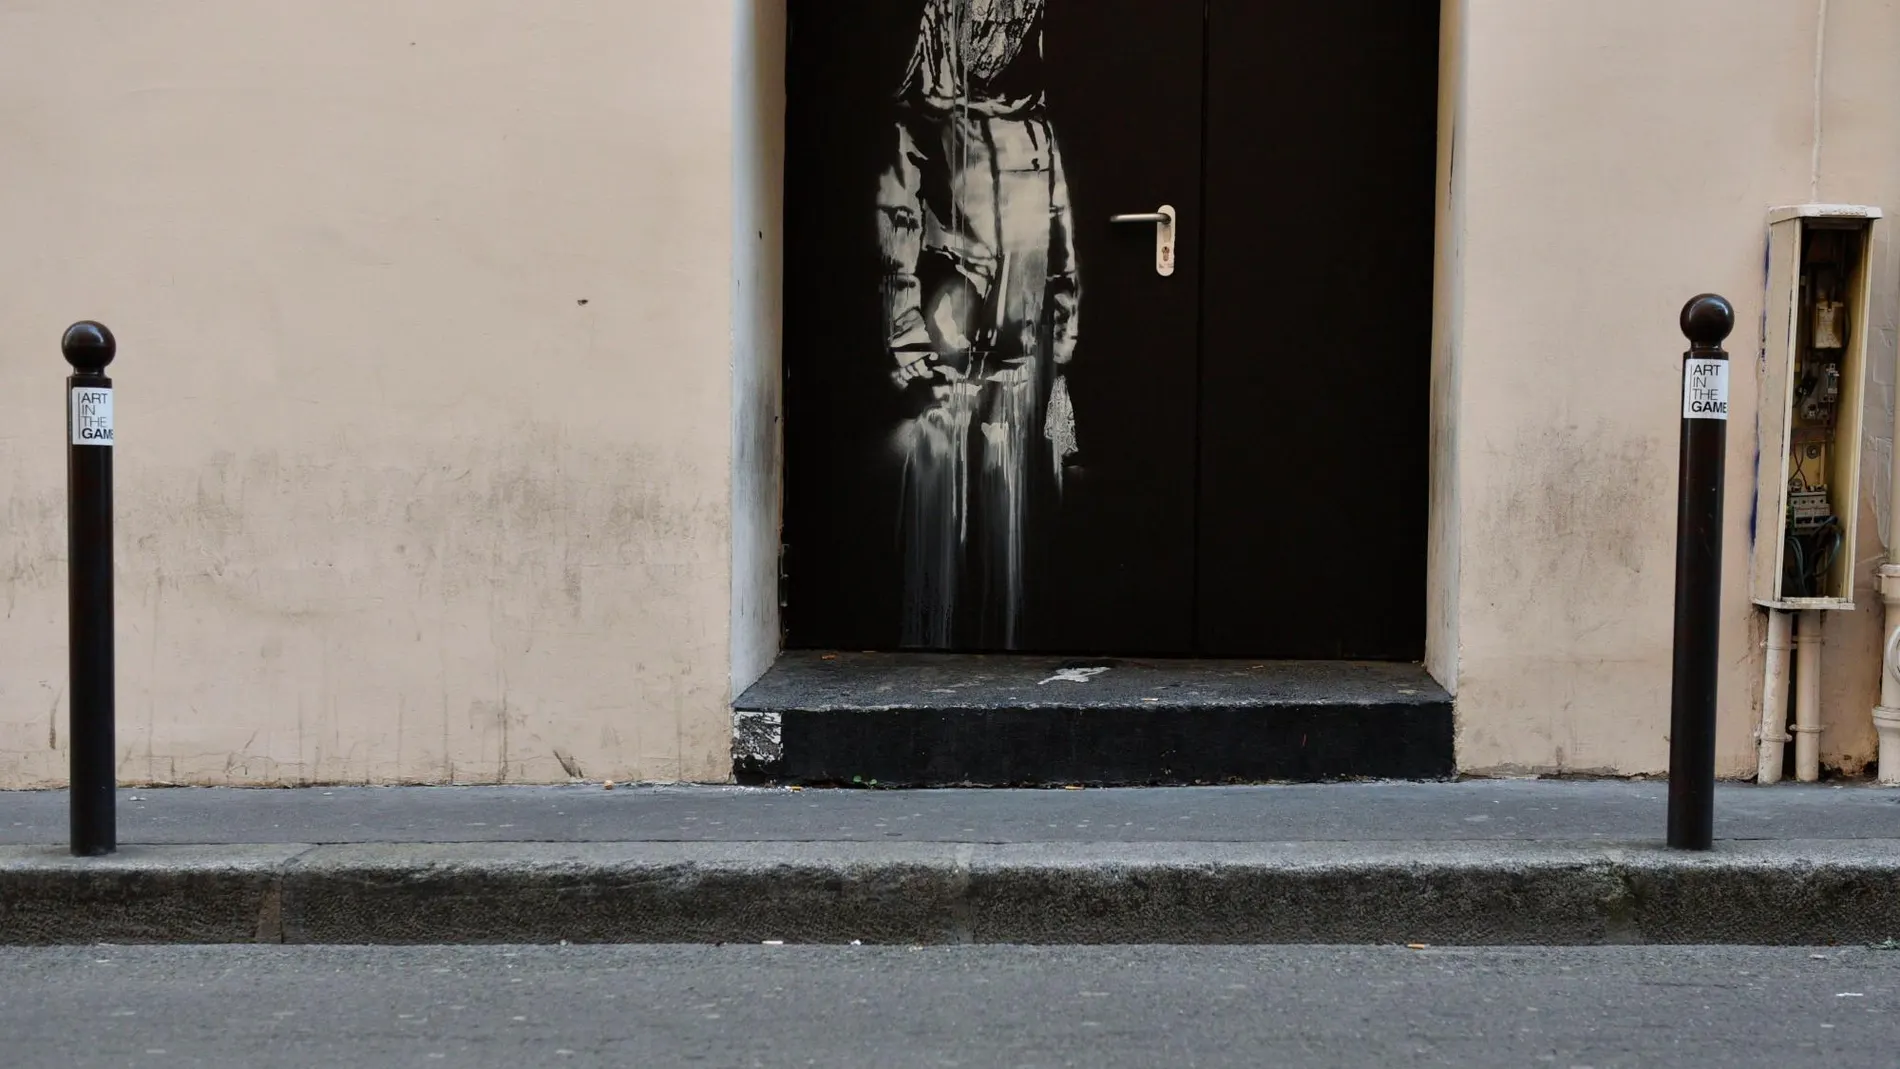 Puerta de emergencia del teatro Bataclan con la obra de Banksy